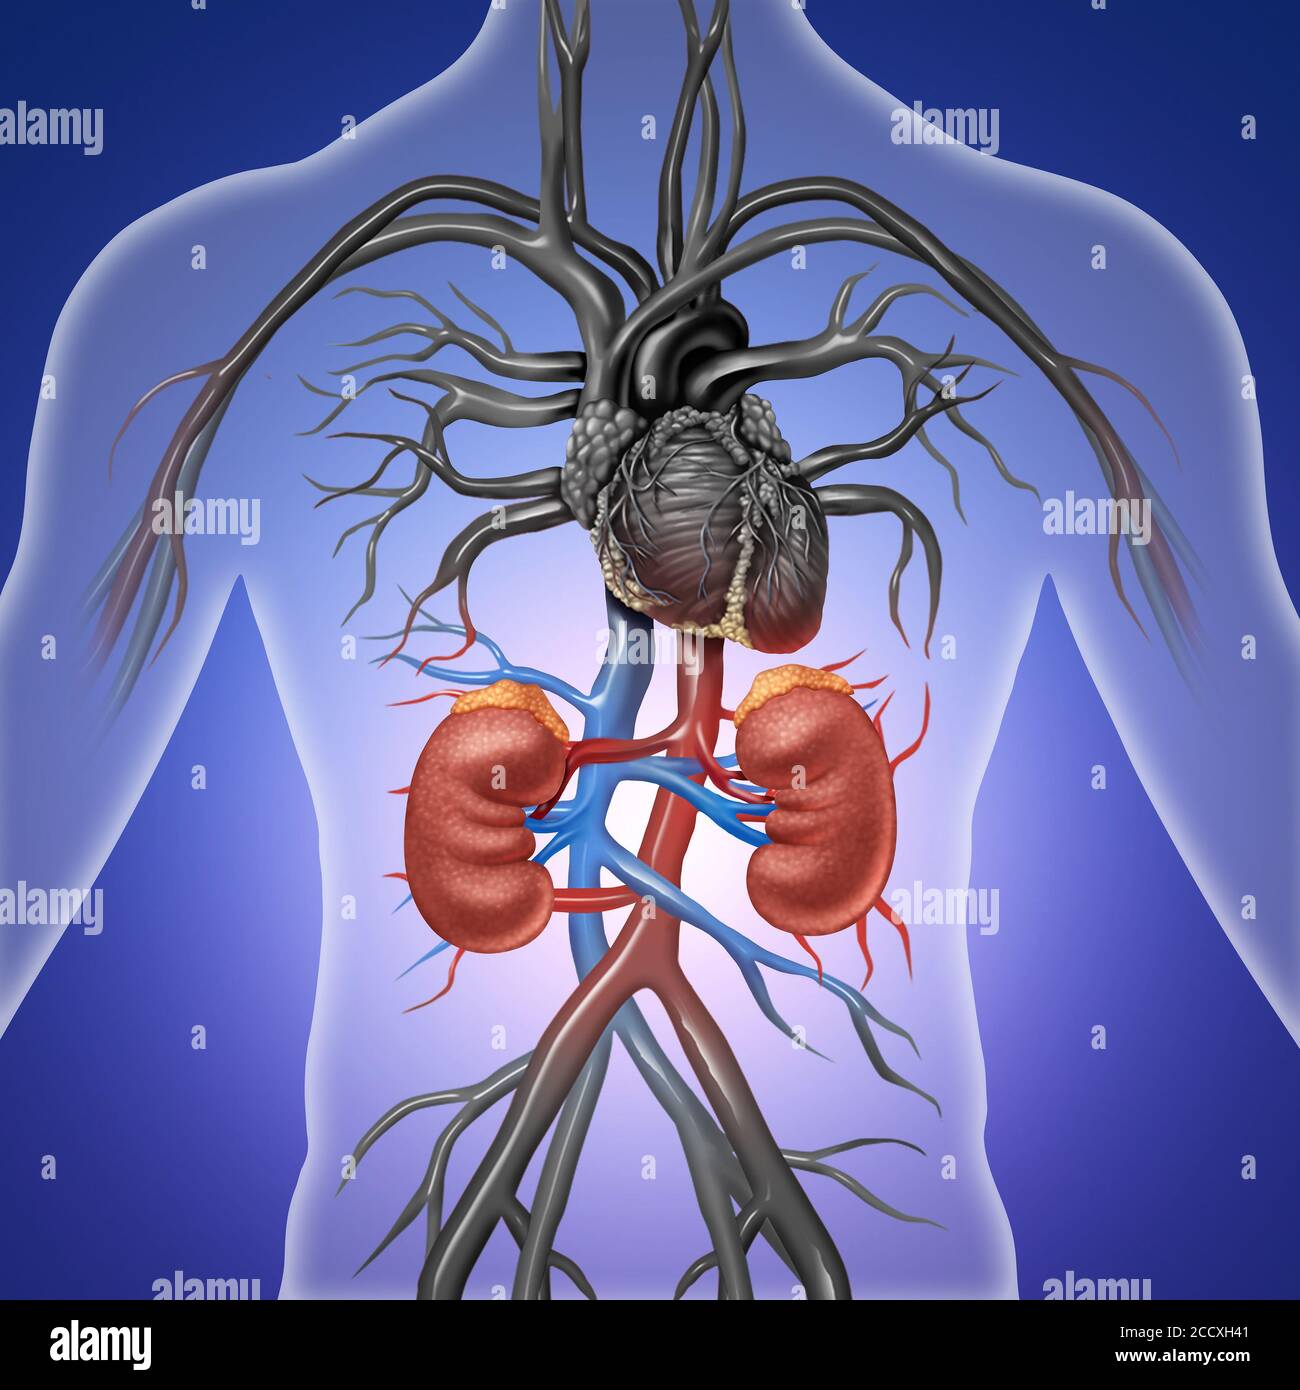 Reni umani con arterie rosse e blu come un medico illustrazione dell'anatomia interna del sistema urinario as Un diagramma in stile di illustrazione 3D Foto Stock